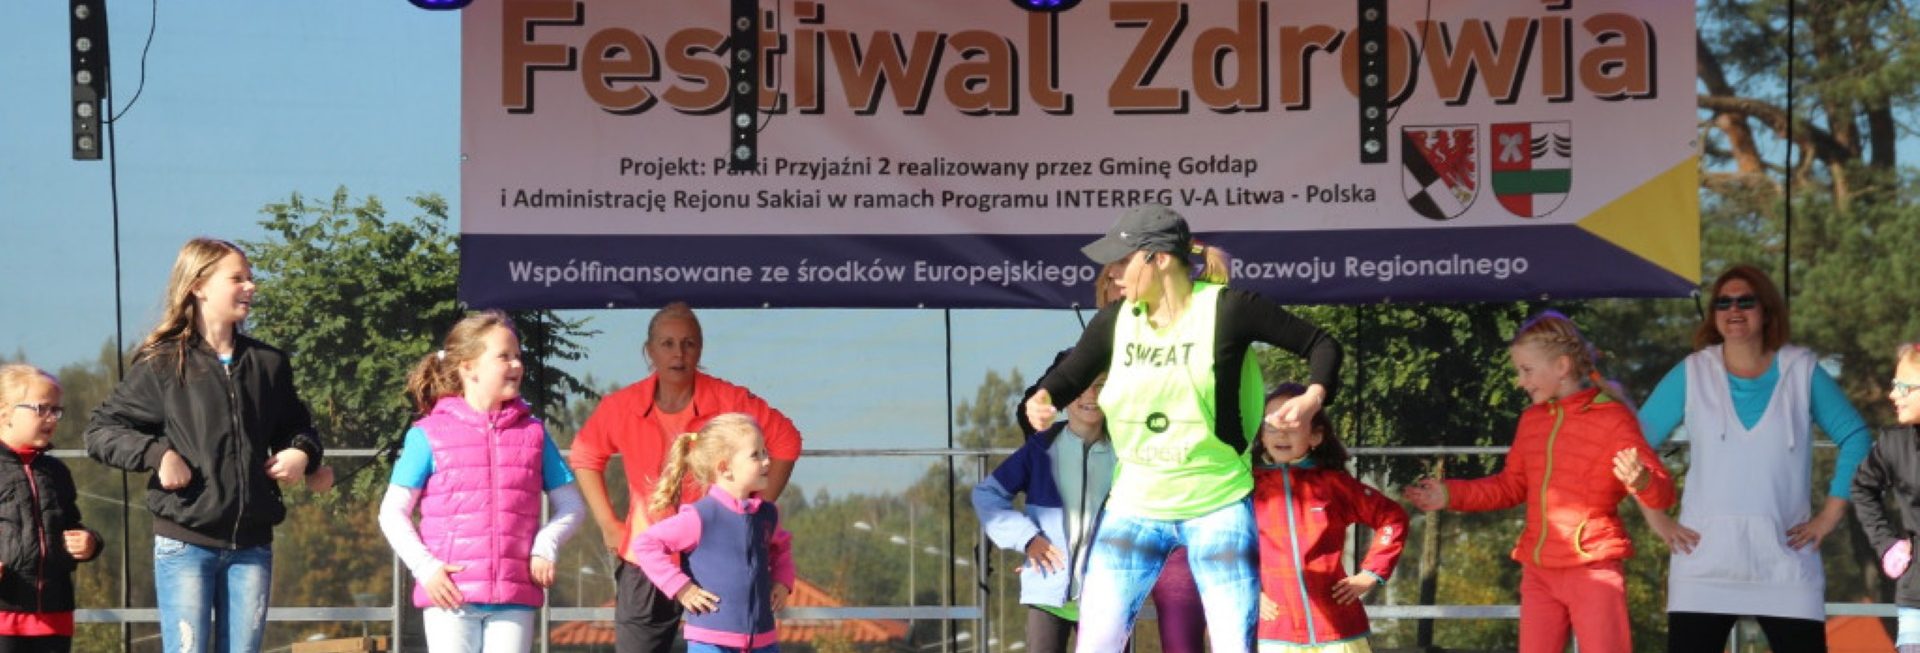 Zdjęcie zapraszające do Gołdapi na cykliczną imprezę Festiwal Zdrowia Gołdap 2022.